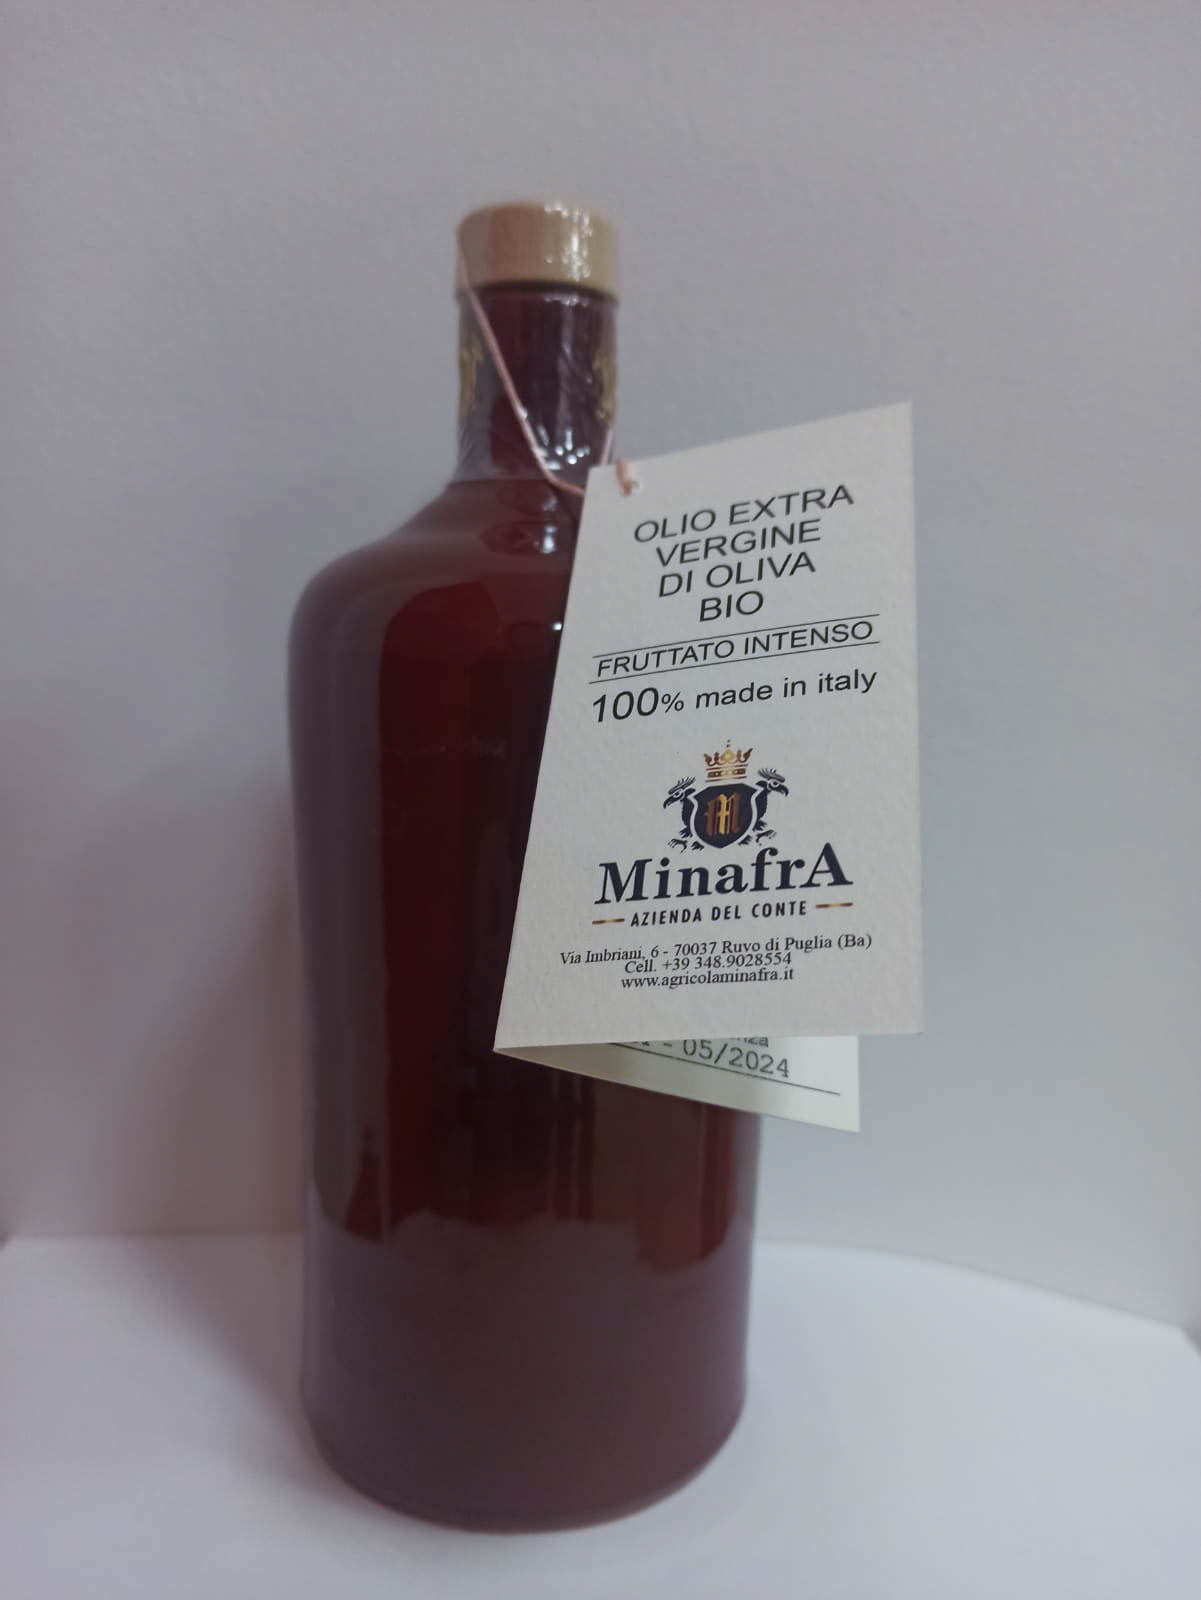 Aceite de oliva virgen extra Minafra en botella de cerámica marrón de 500ml.